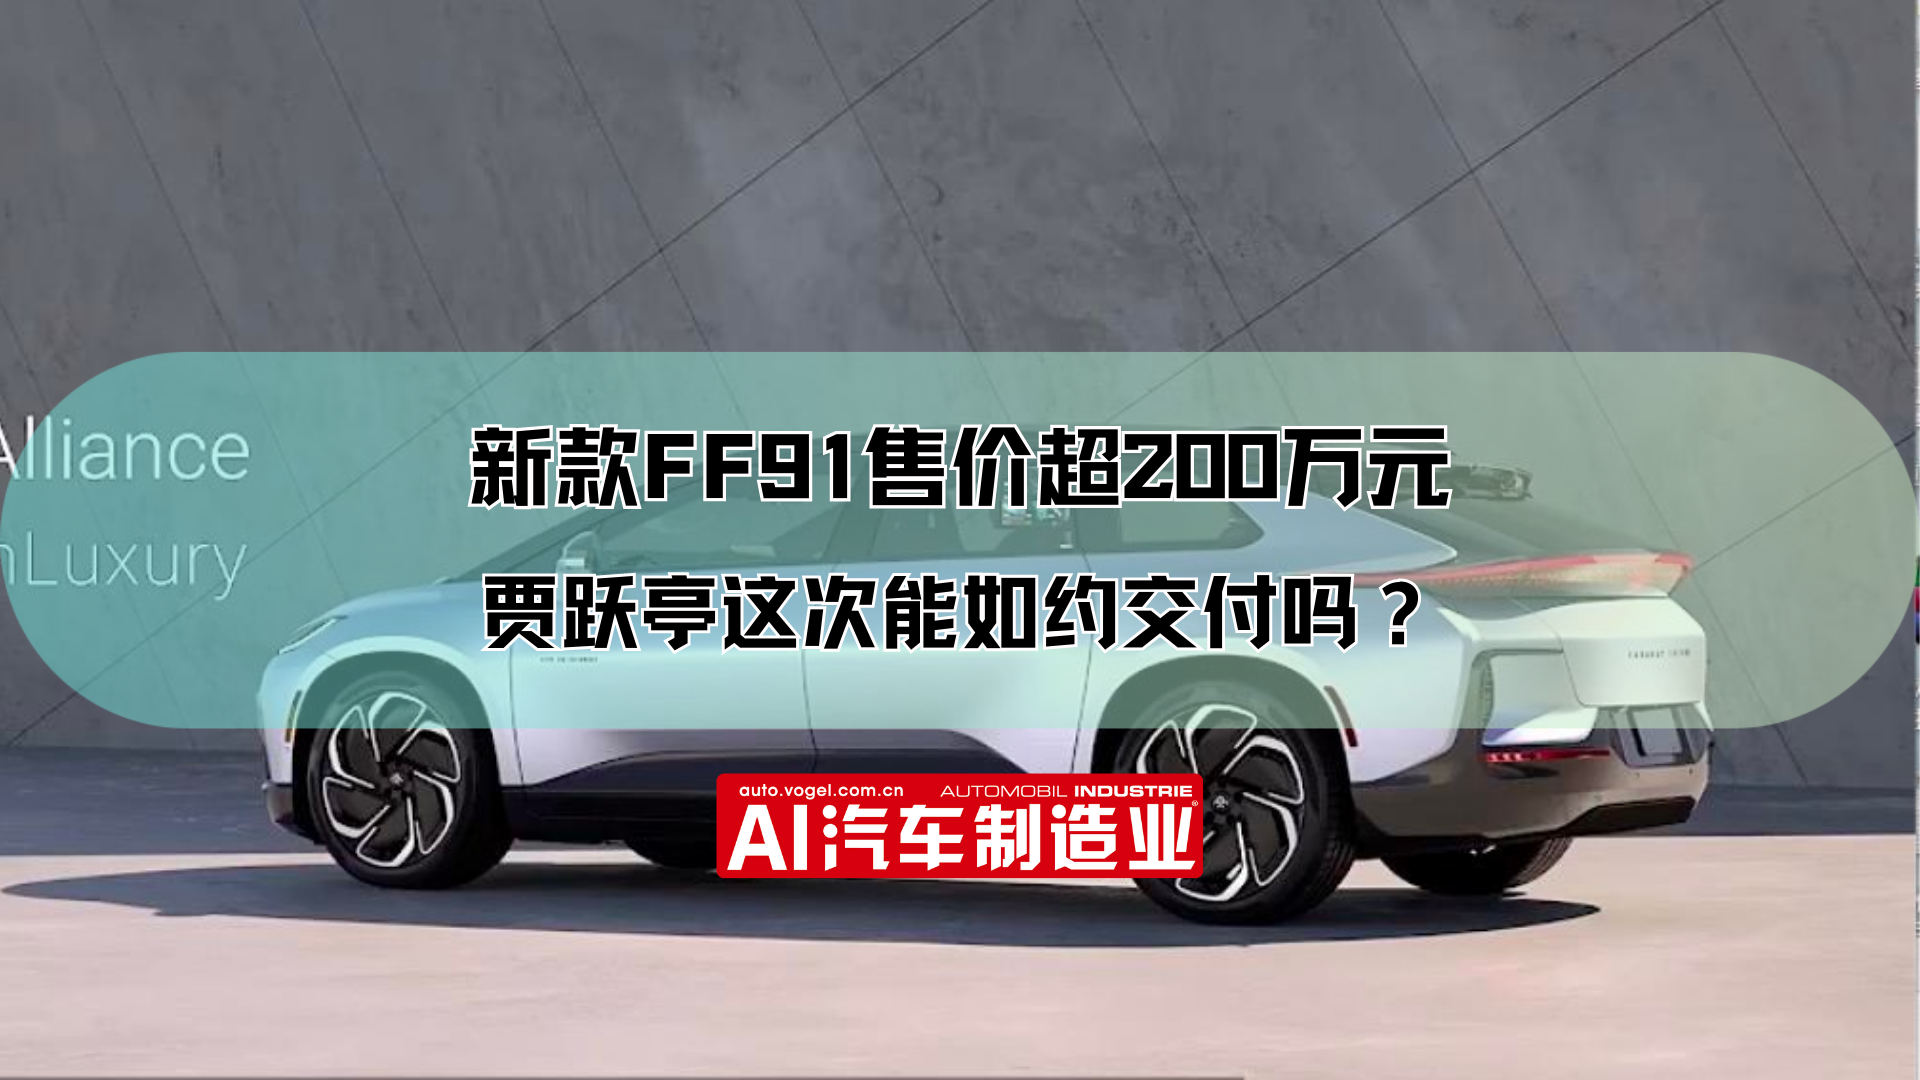 新款FF91售价超200万元 贾跃亭这次能如约交付吗？